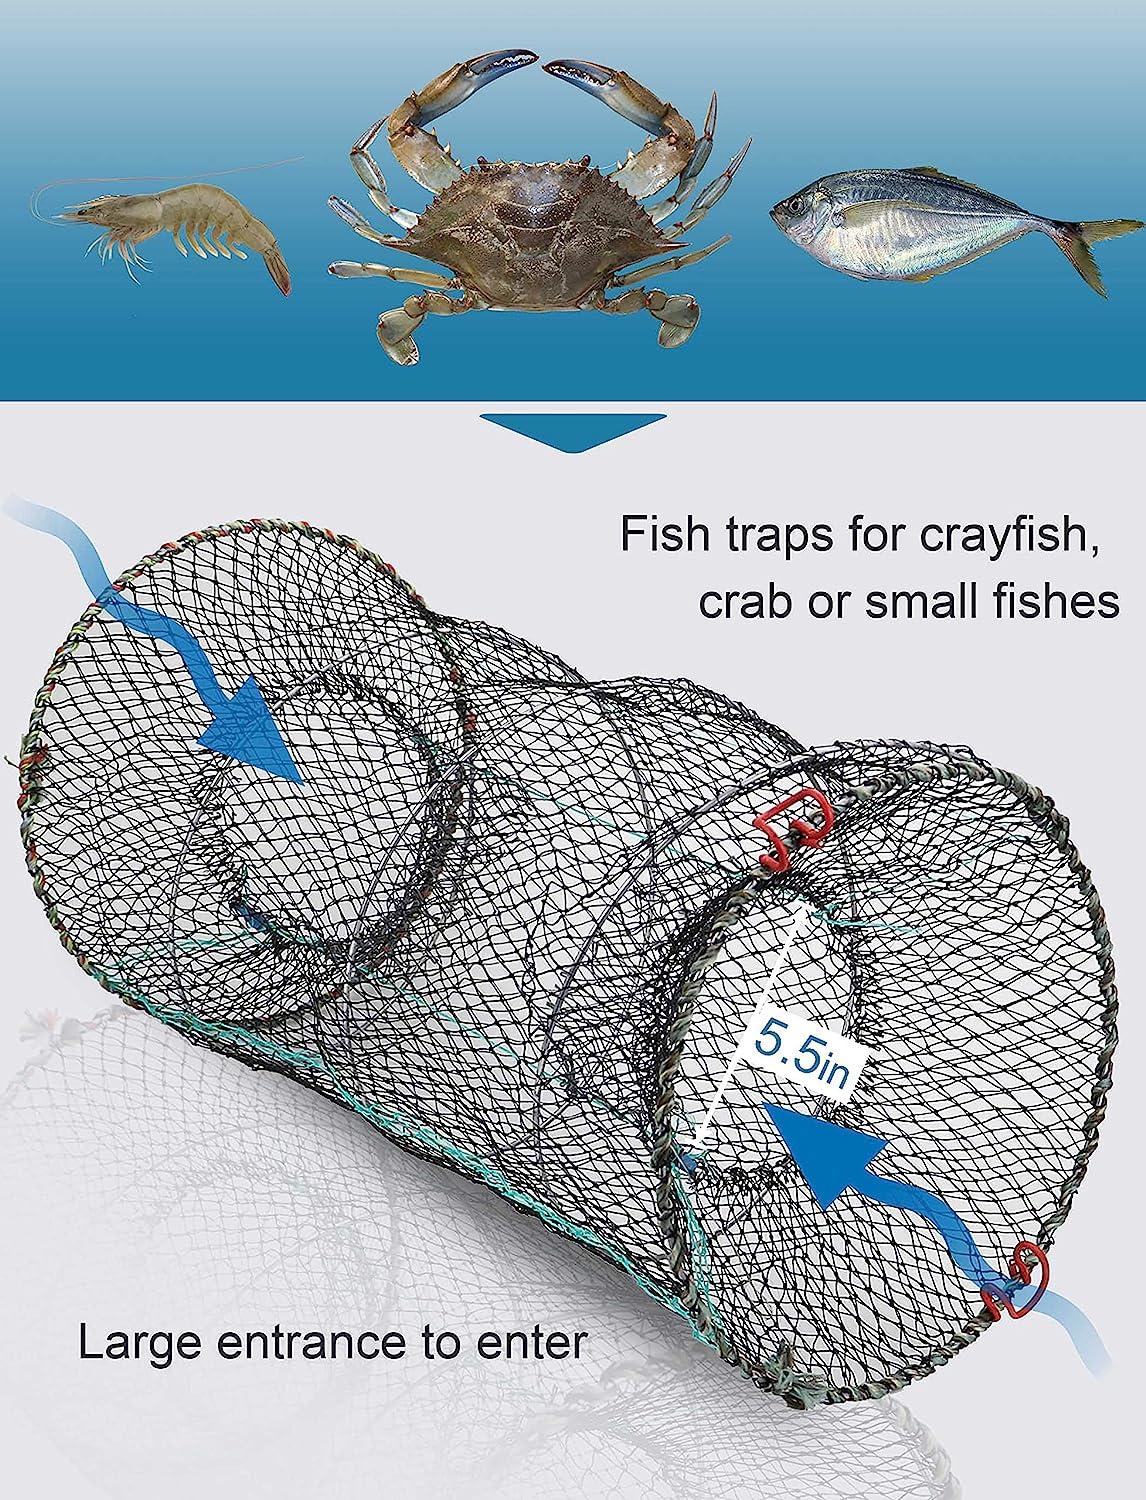 crawfish traps